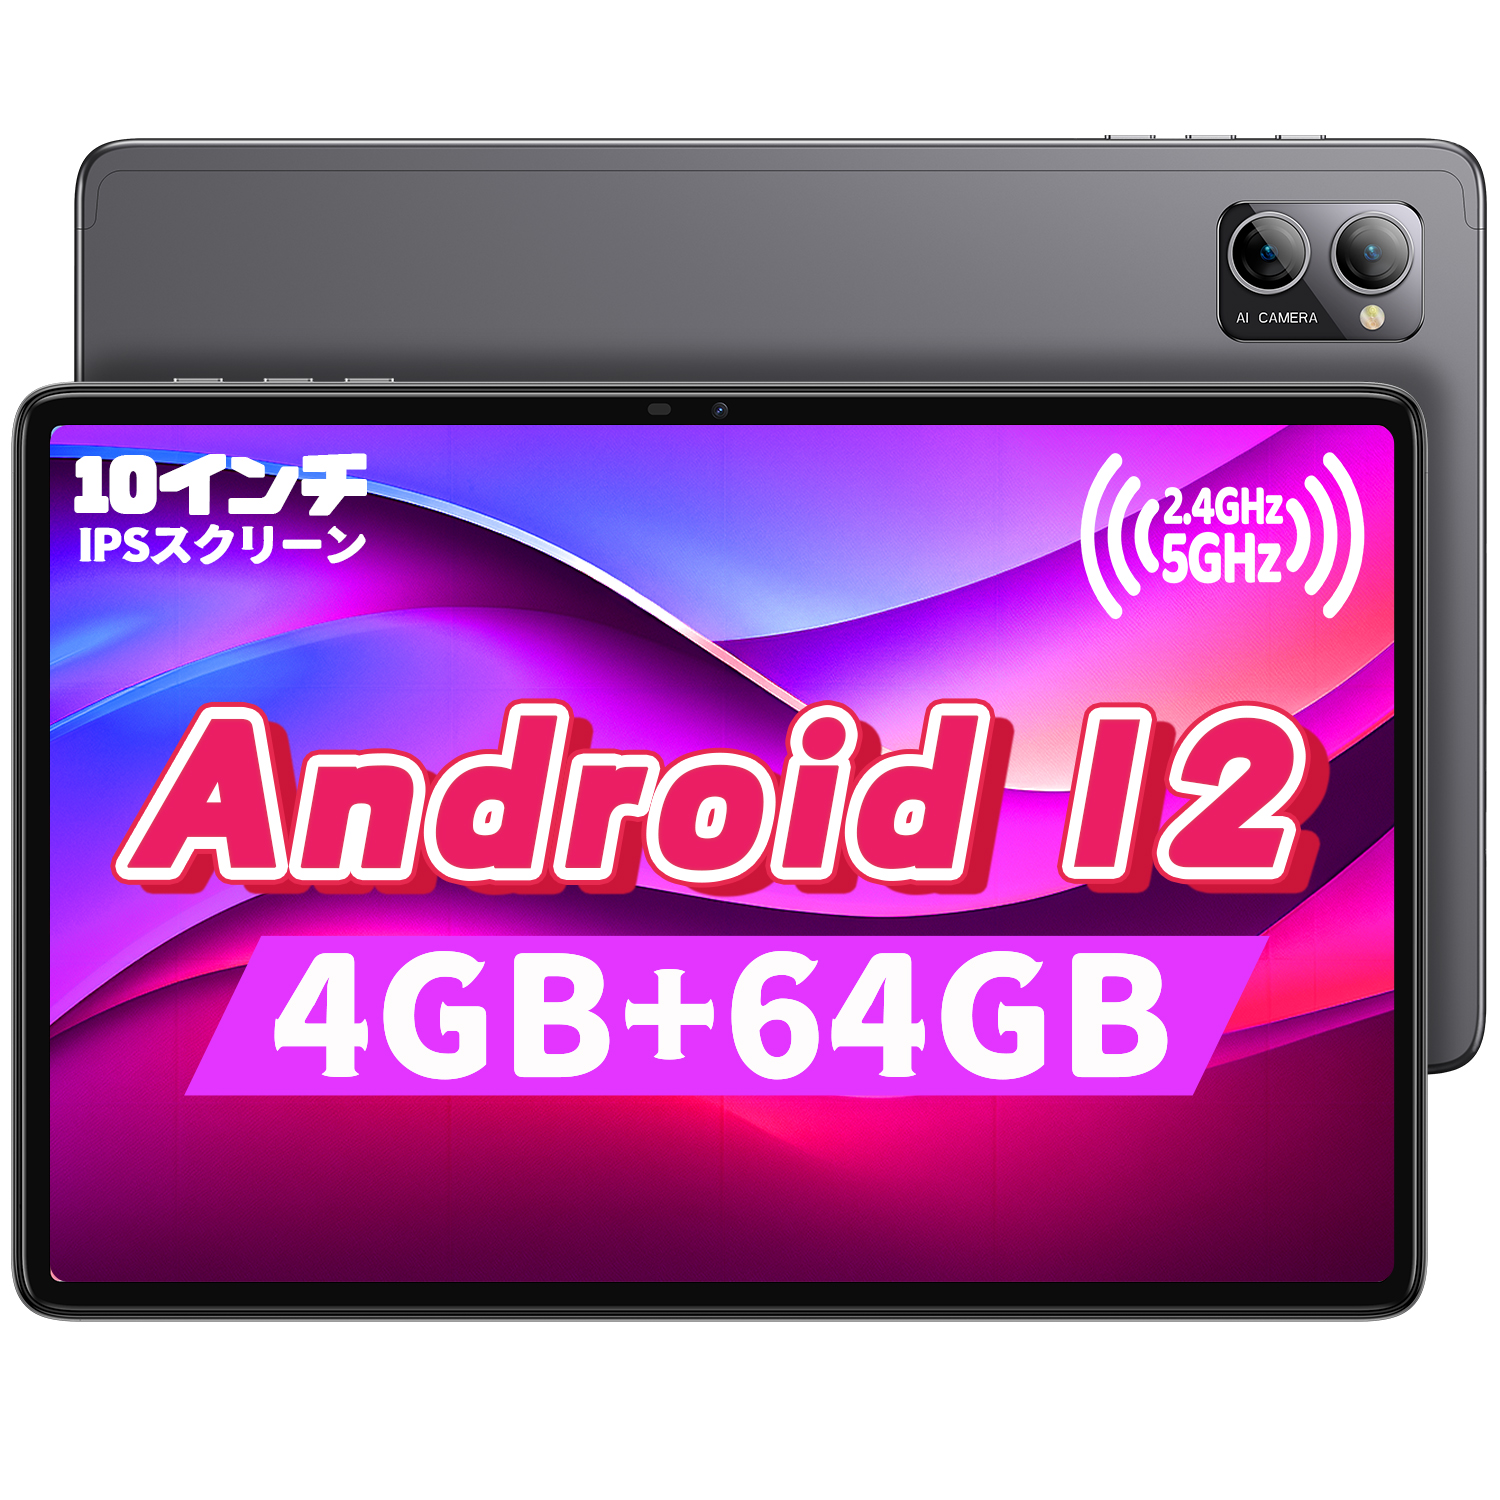 不定期セール 終了未定(プロフ必読)OnePlus8T 8GB/128GB 美品